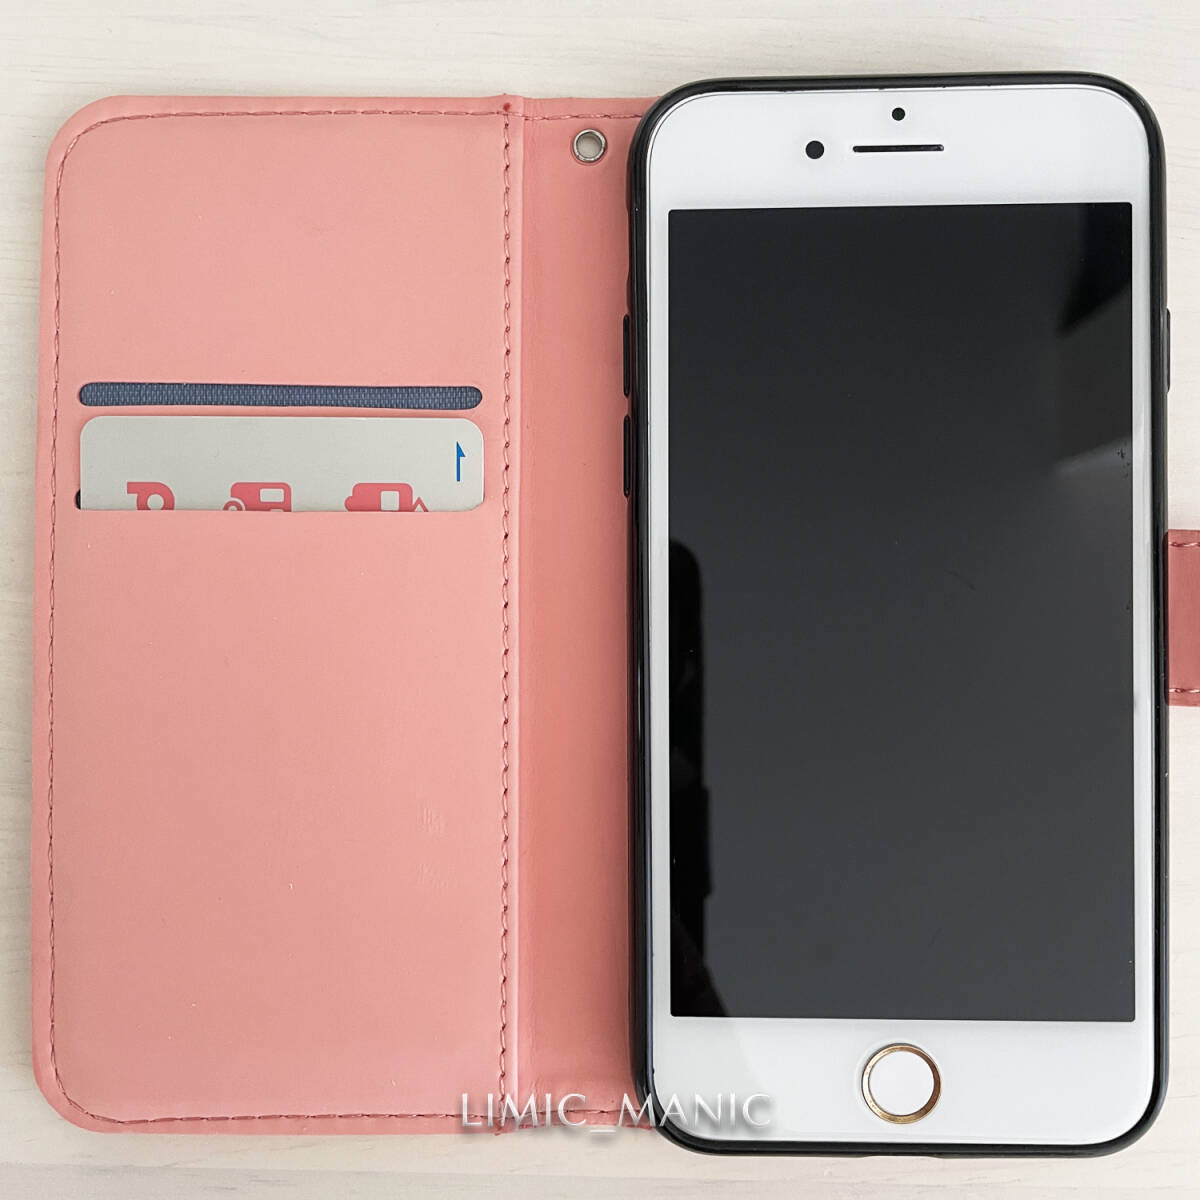 iPhone 7 8 SE (第2世代/第3世代) SE2 SE3 ケース スマホ 手帳型 カードケース ピンク pink エスニック風 曼荼羅模様 アイフォン_画像2